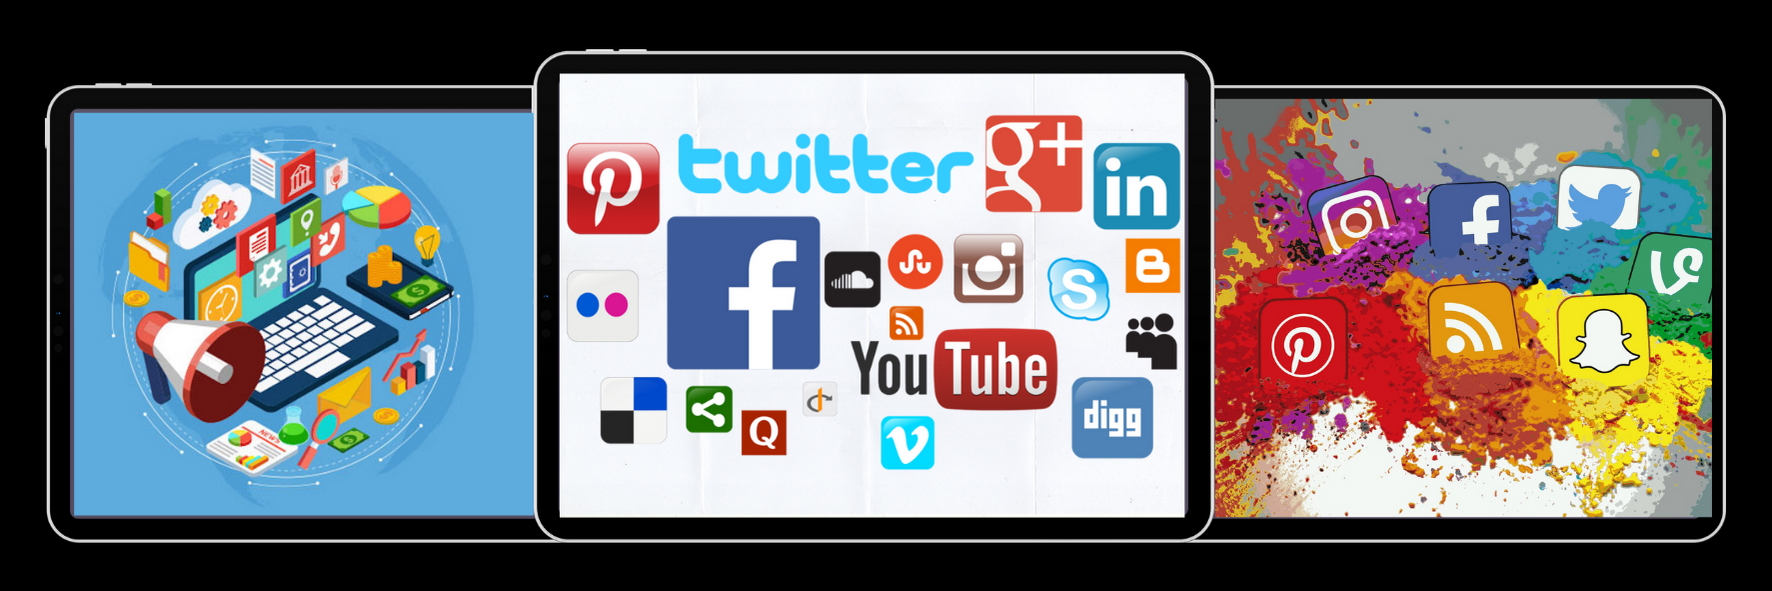 social-media-and-seo-tools